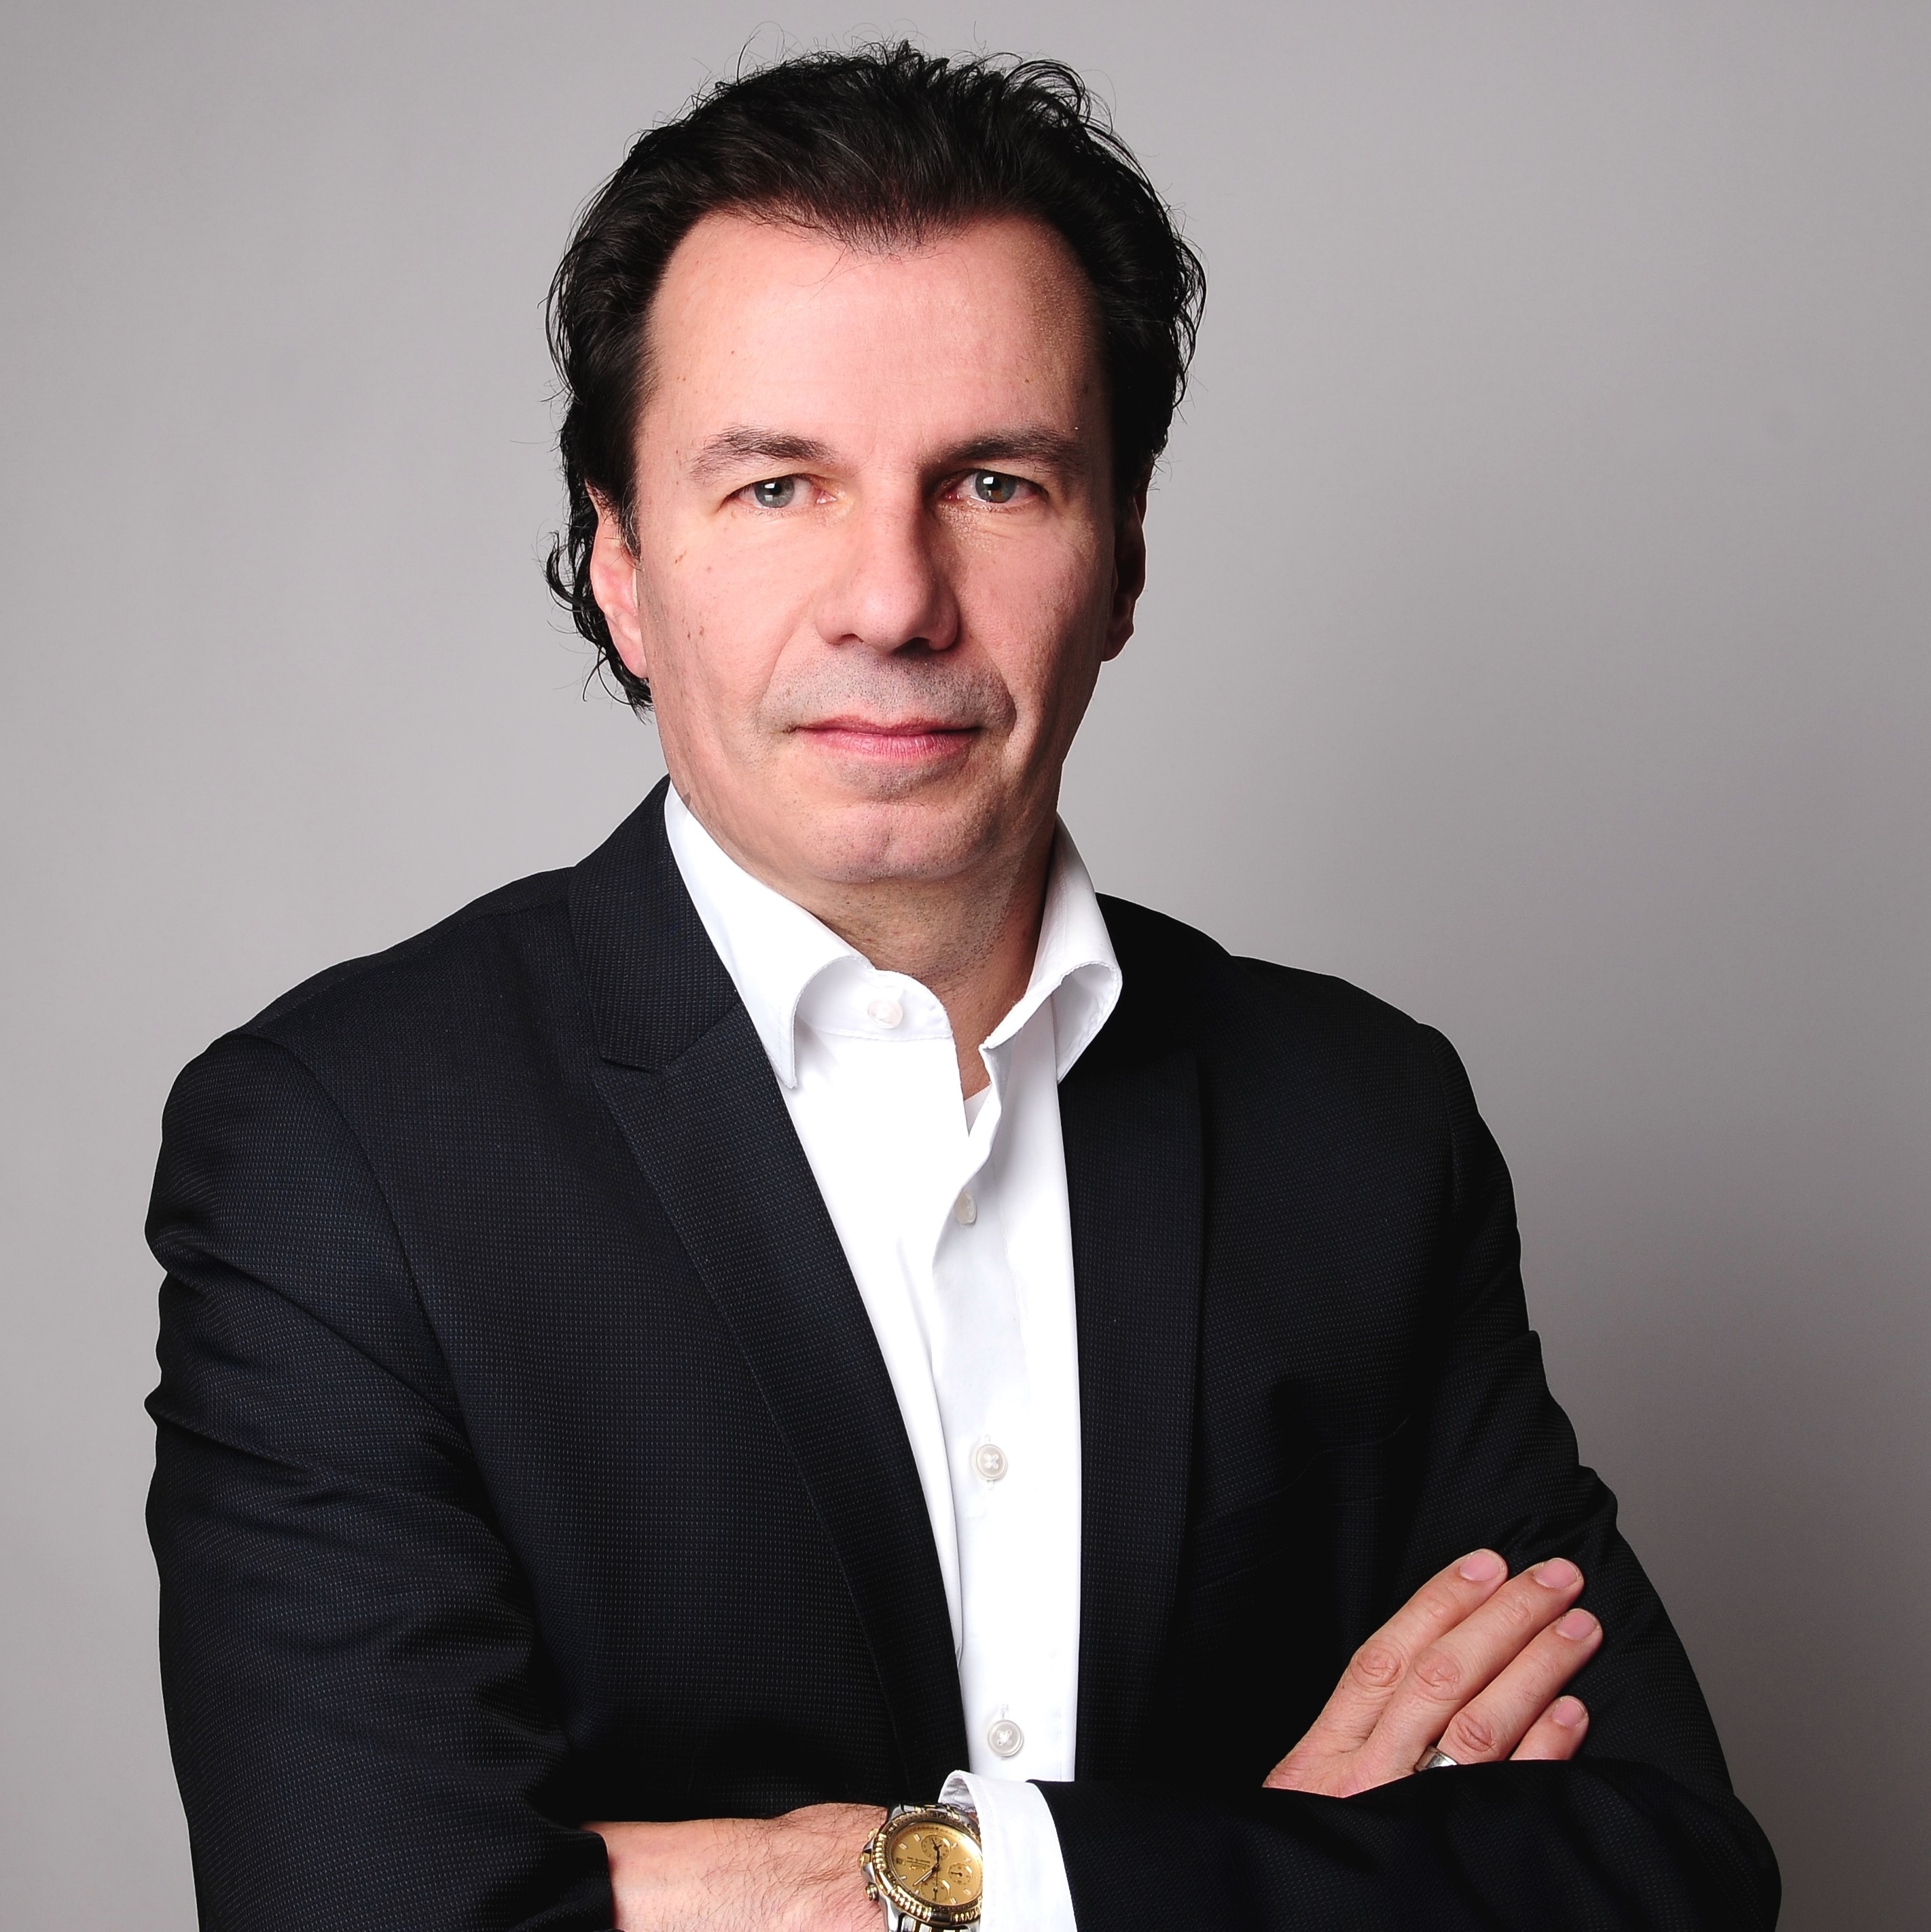 Christian Kaufmann - International Channel Manager